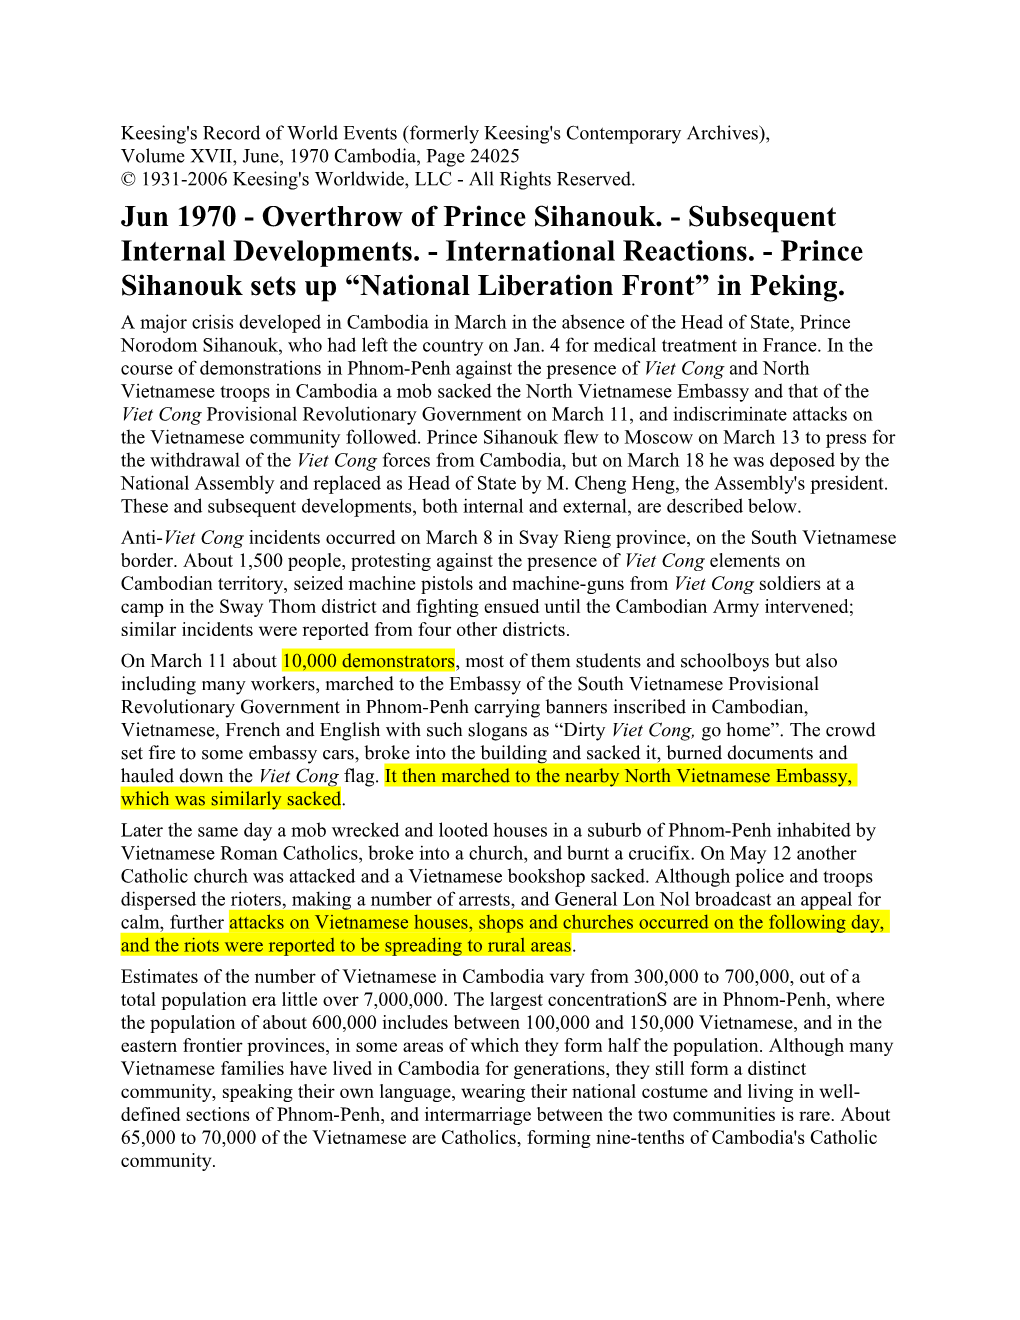 Jun 1970 - Overthrow of Prince Sihanouk. - Subsequent Internal Developments. - International